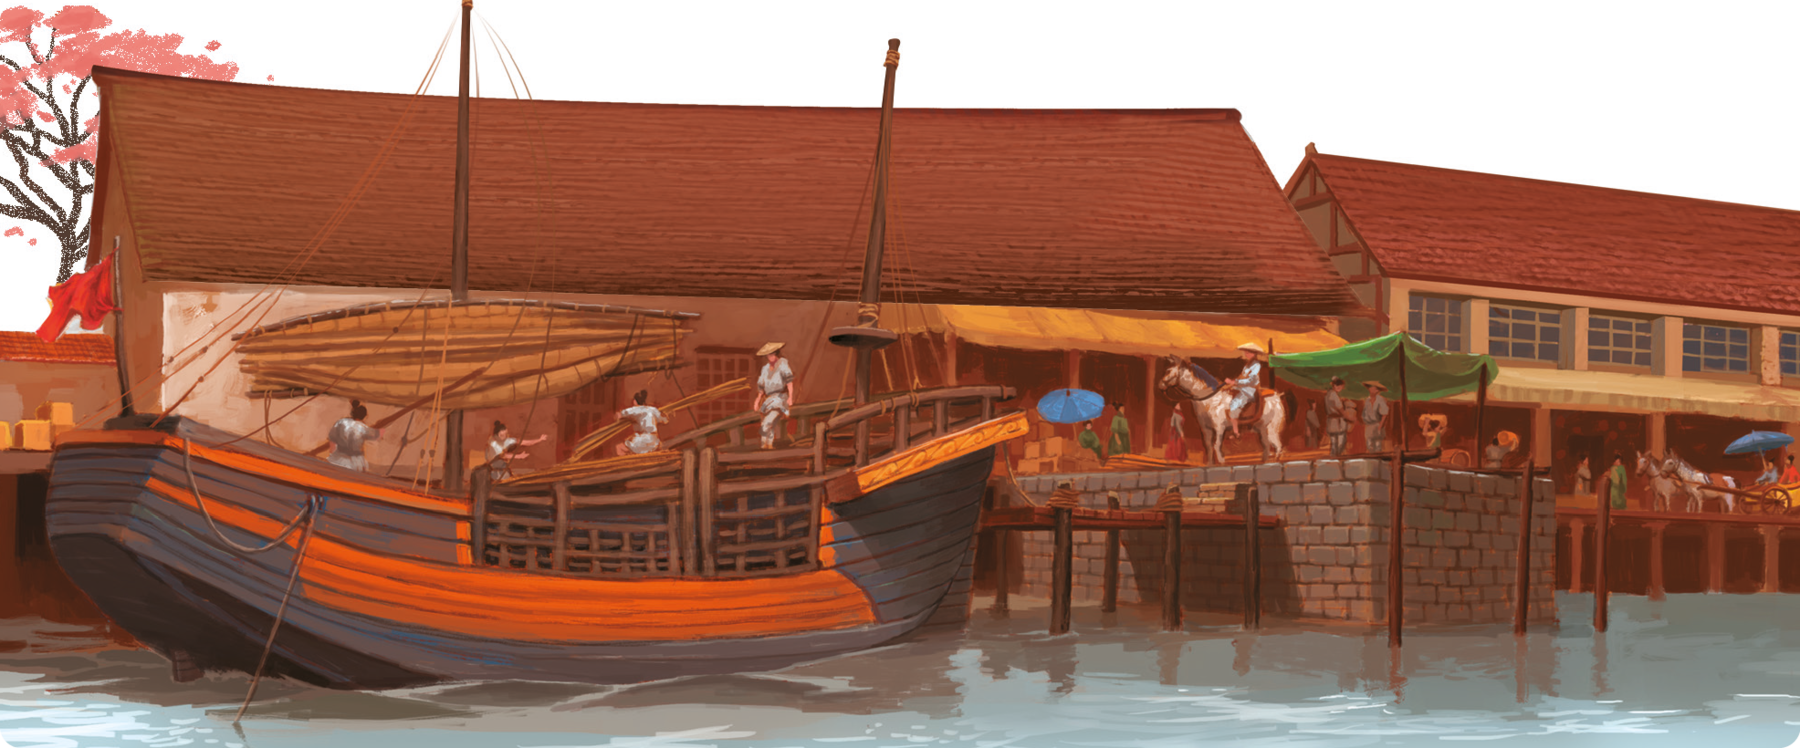 Ilustração. Uma embarcação pequena com uma vela. Ela está sobre um corpo de água, encostada em um porto. No porto, há uma pessoa usando chapéu, sobre um cavalo. Atrás, pessoas carregando objetos. No fundo, construção de moradias.